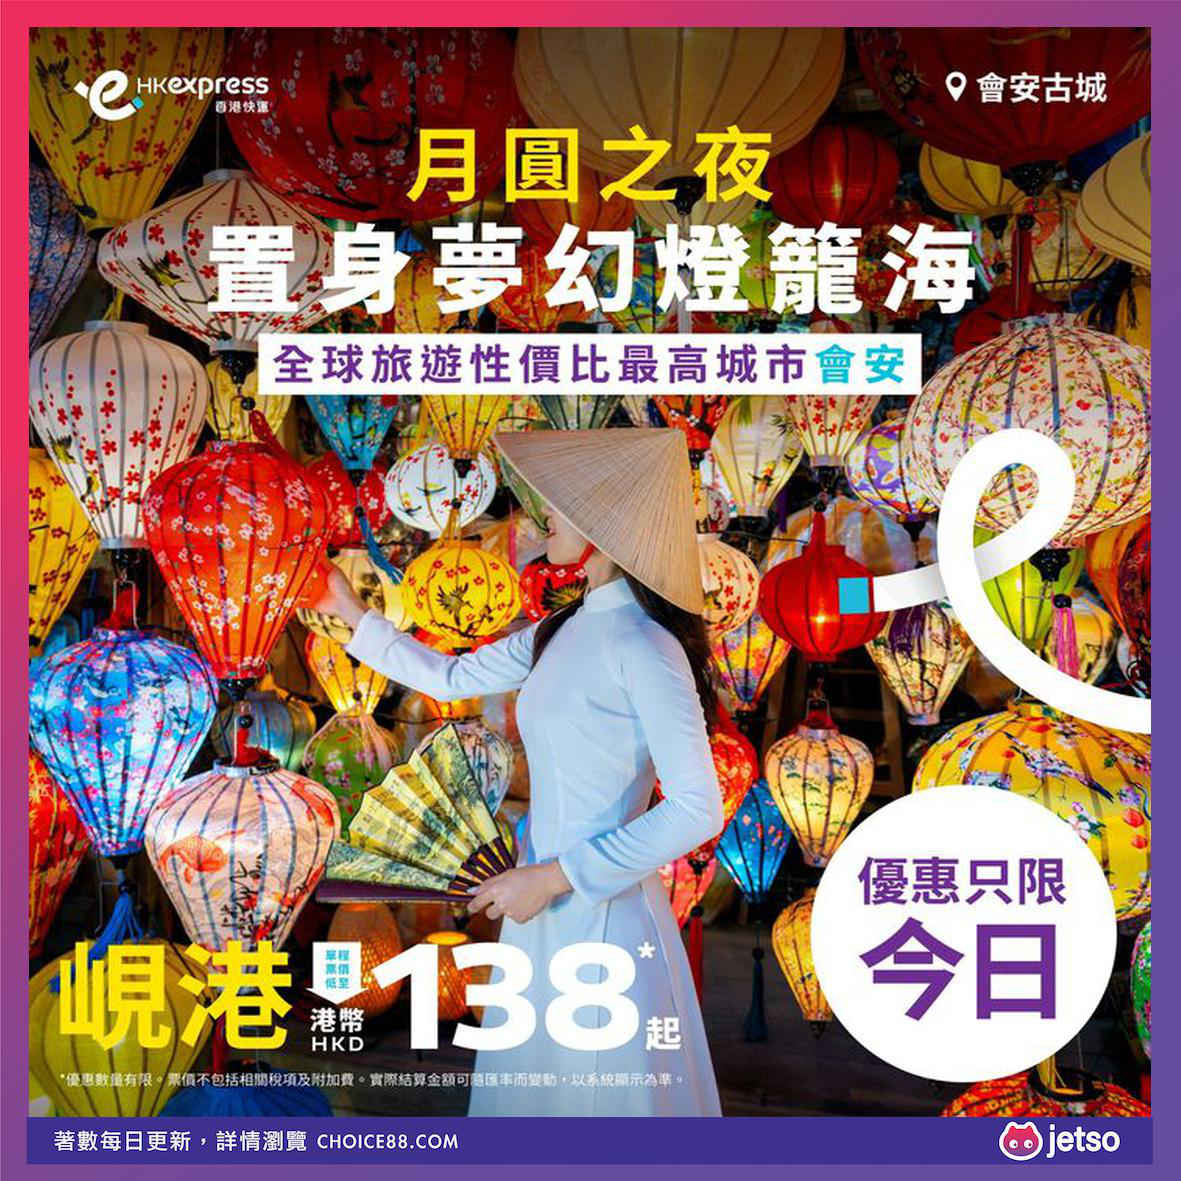 HK Express : [机票优惠]岘港单程票价低至 HKD 138